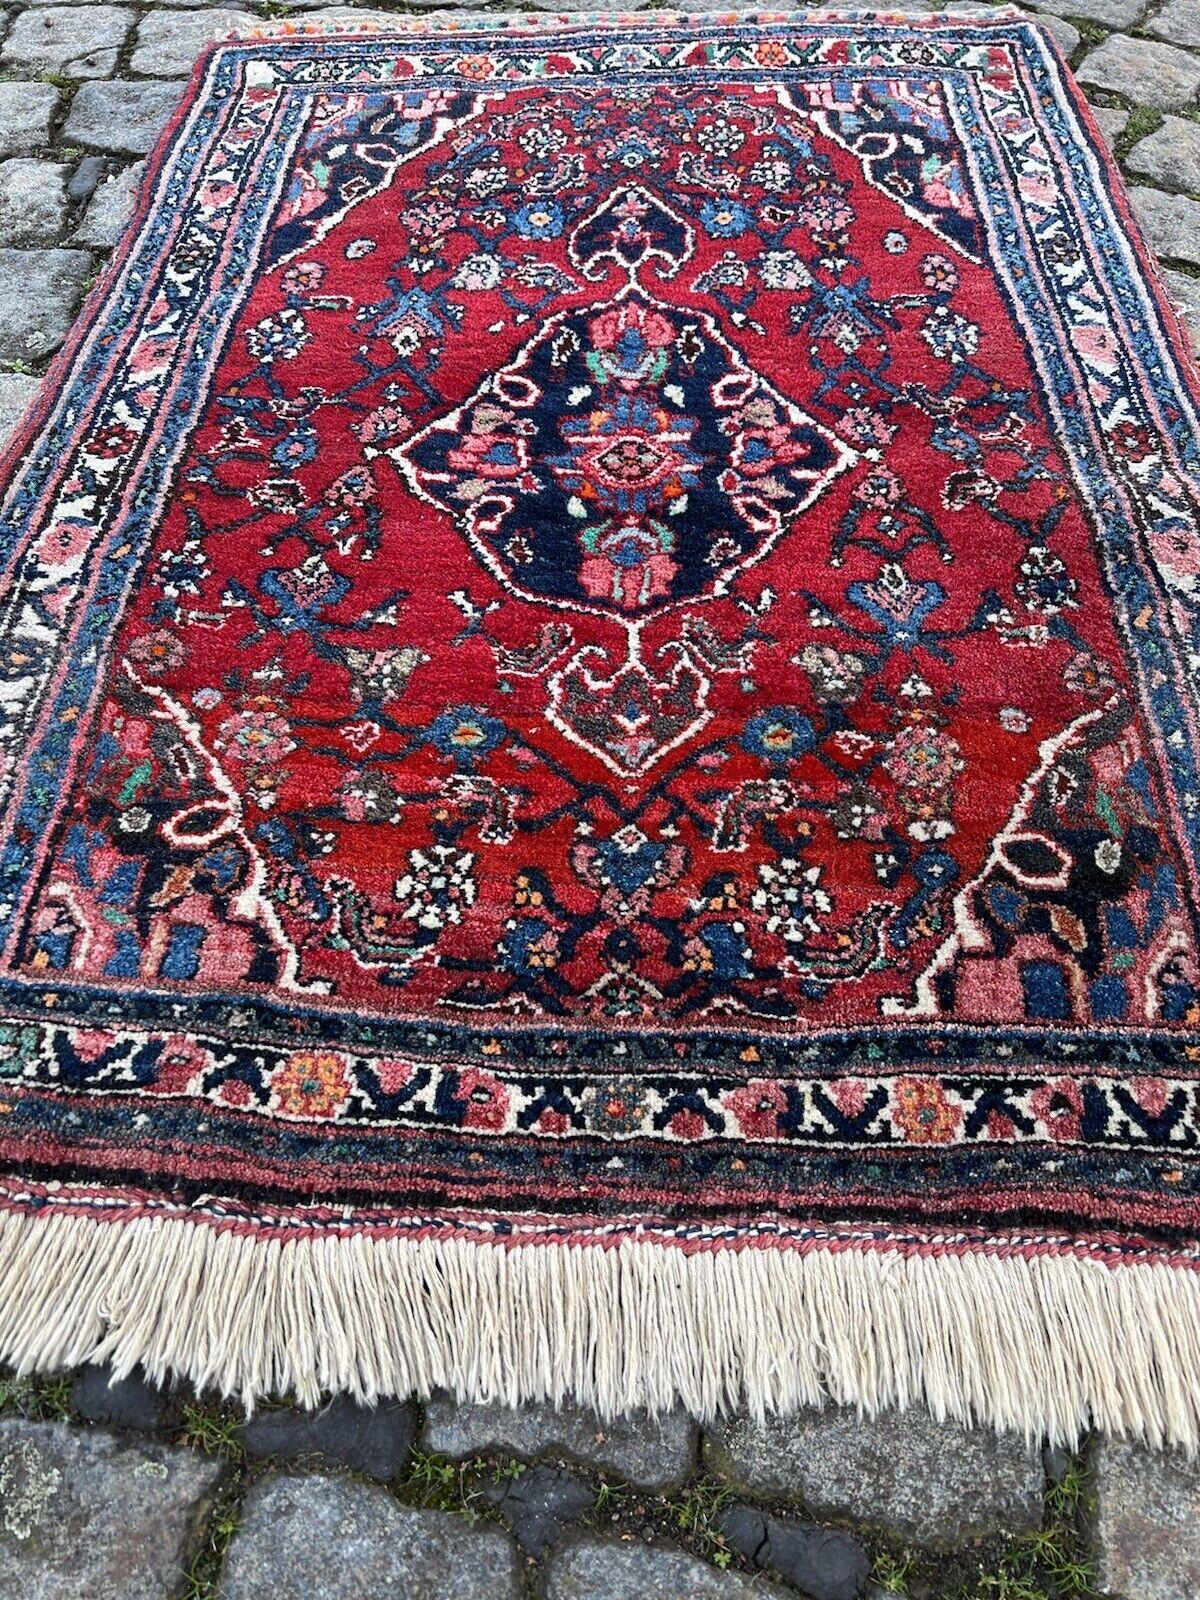 Handgefertigter Bidjar-Teppich im persischen Vintage-Stil
Überblick:
Treten Sie ein in die Pracht unseres handgefertigten Bidjar-Teppichs im persischen Vintage-Stil, ein Zeugnis reicher Tradition und dauerhafter Handwerkskunst. Dieses authentische